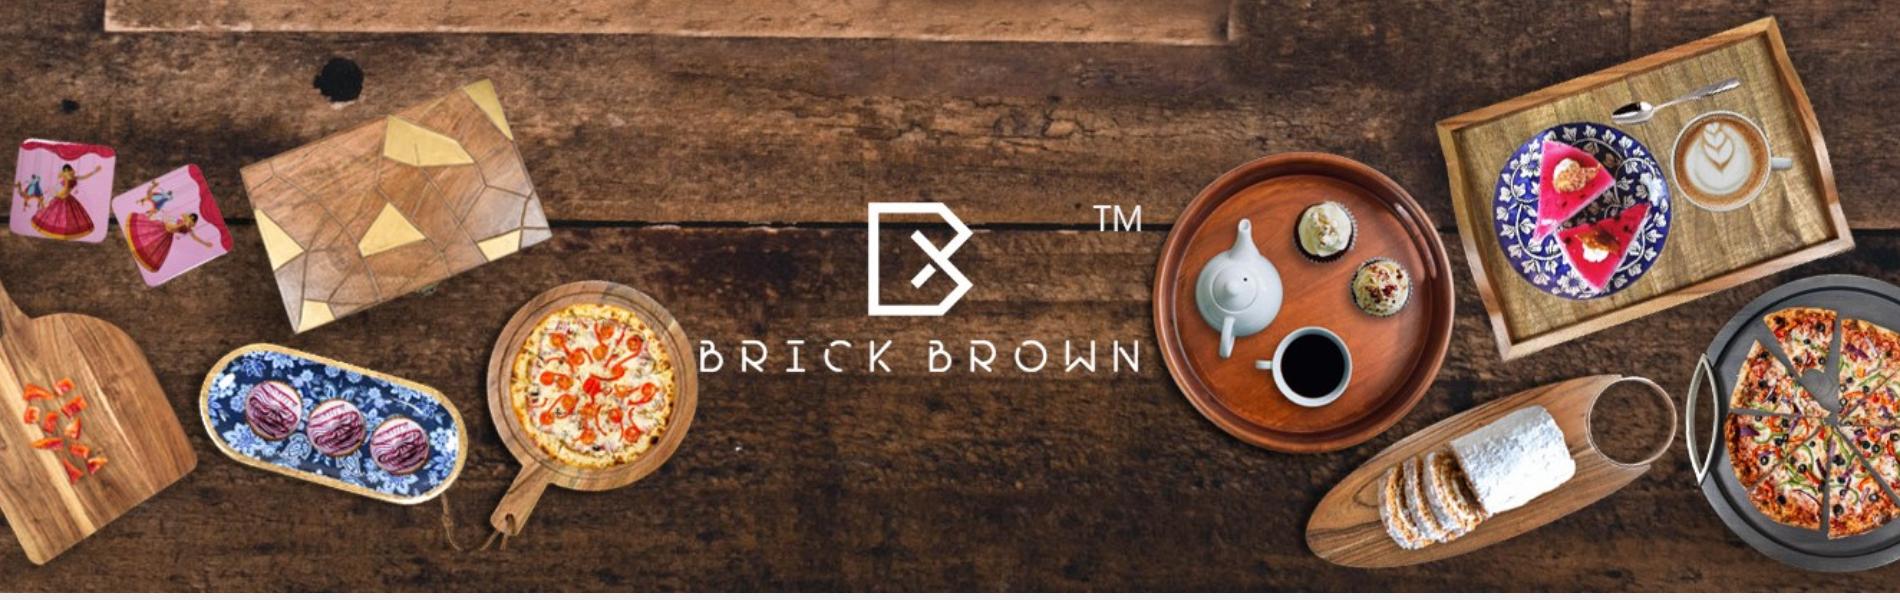 Brick Brown